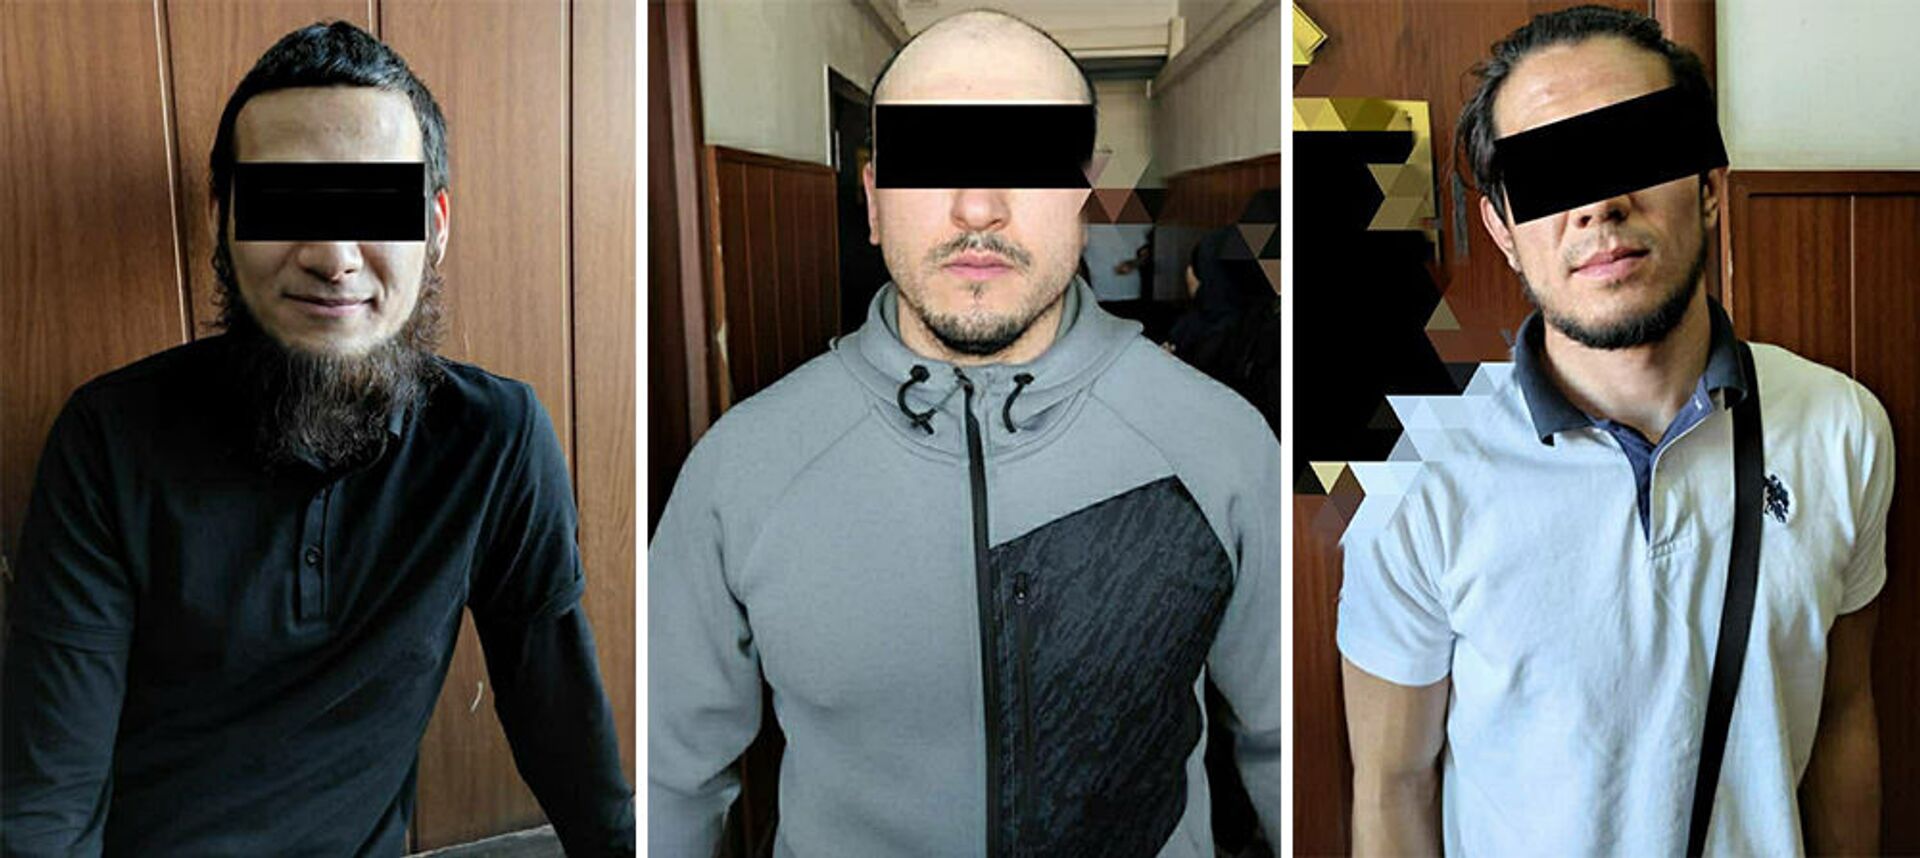 В Бишкеке похитили 17-летнего парня — задержаны трое подозреваемых. Фото - Sputnik Кыргызстан, 1920, 04.05.2021